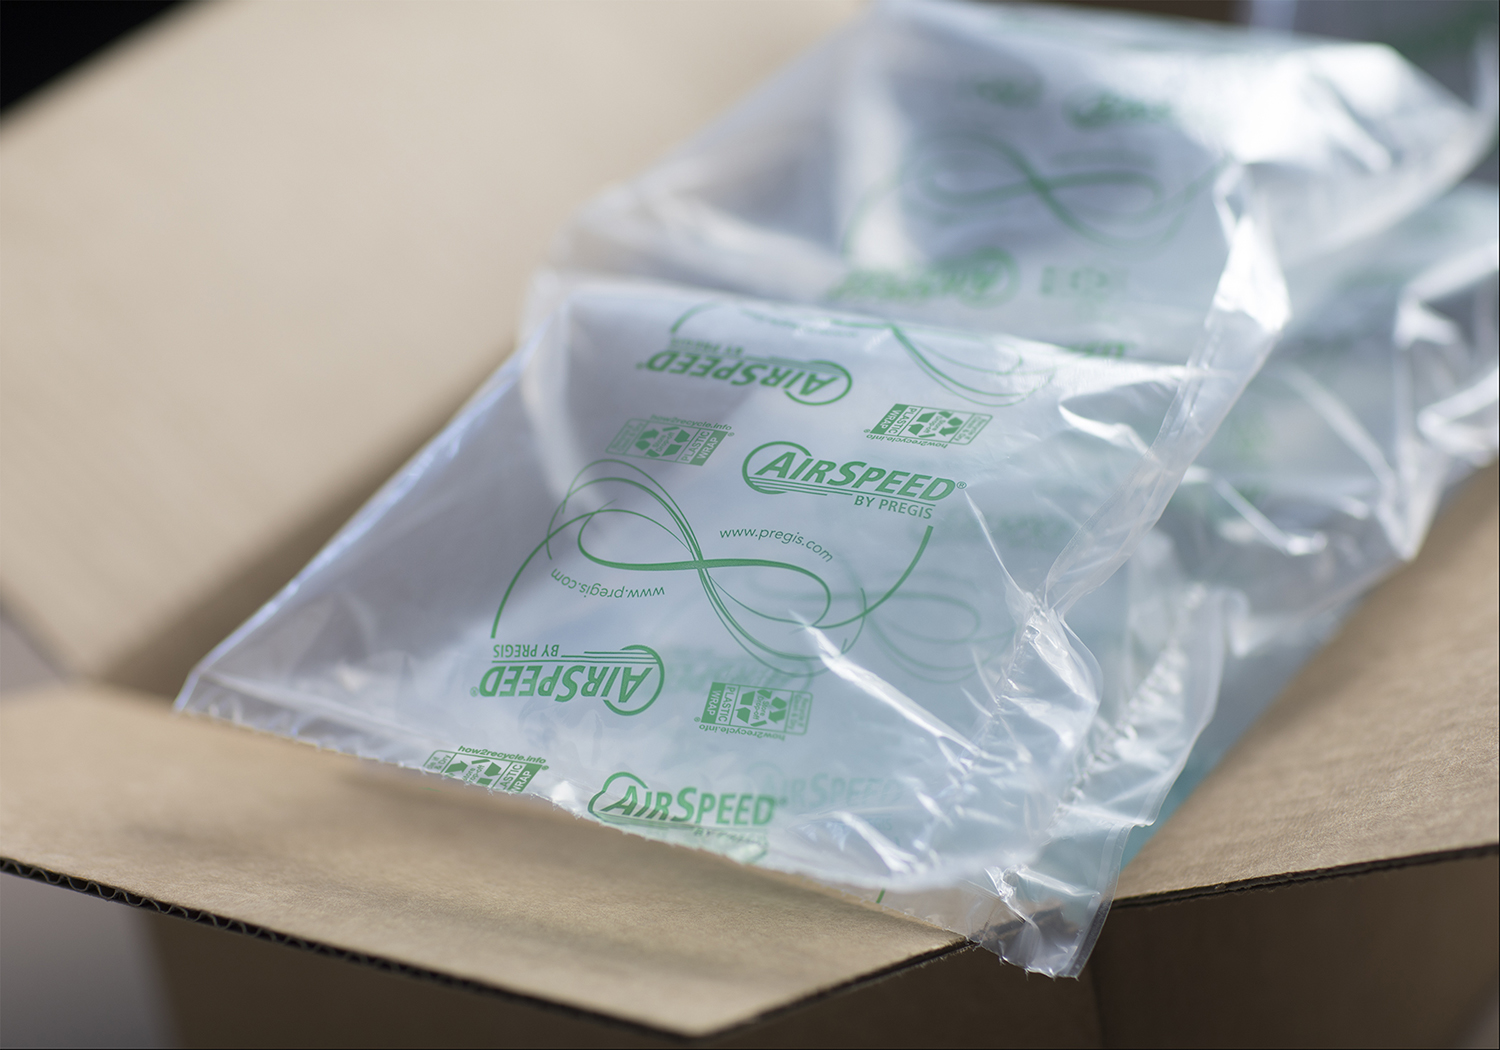 Airspeed Air Pillows inside box packaging